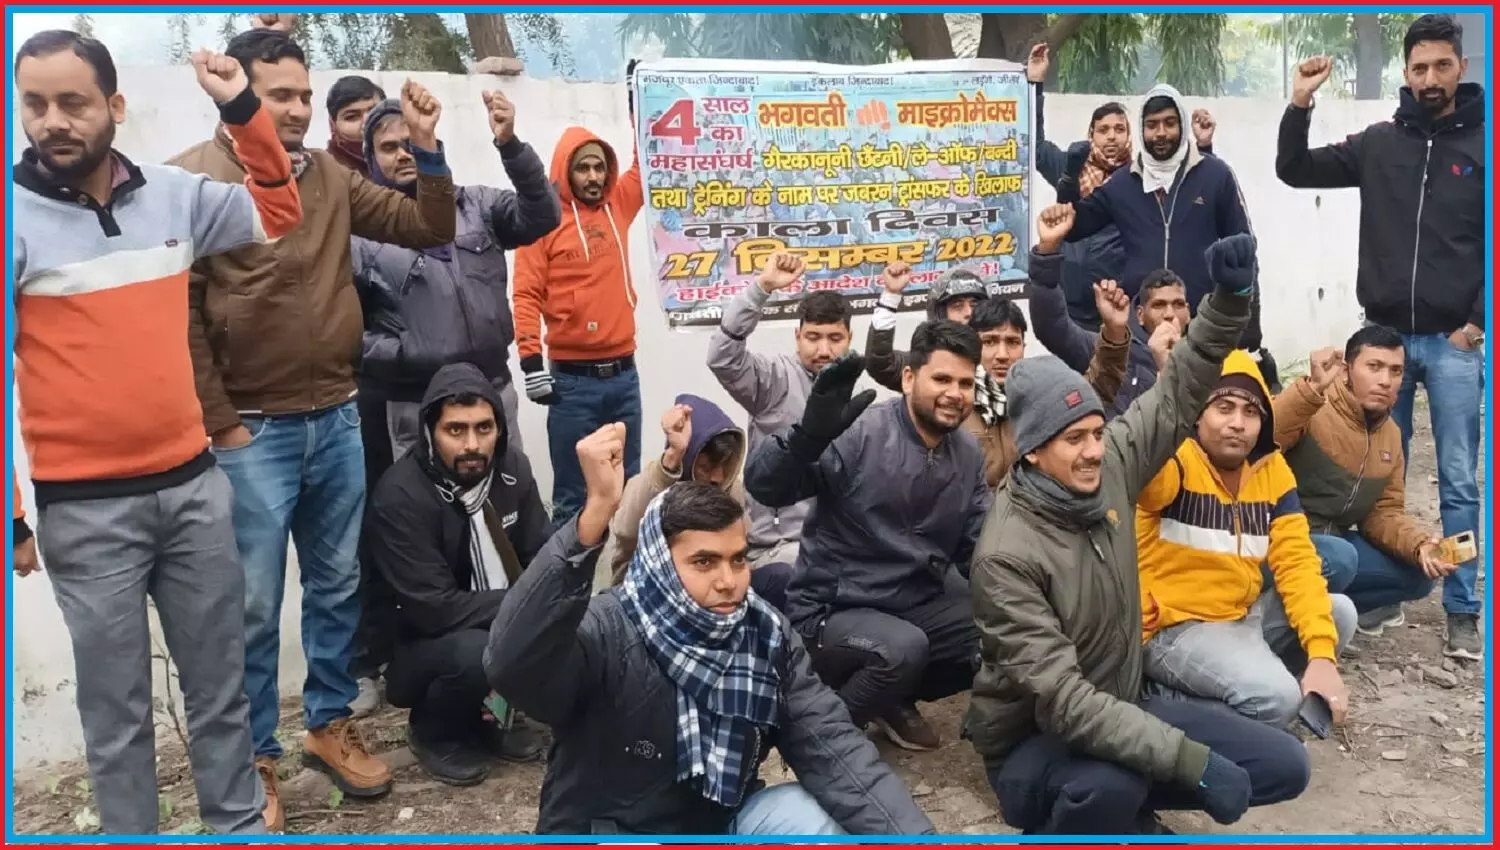 उत्तराखंड में भगवती श्रमिकों ने काला फीता बांधकर श्रम भवन में मनाया काला दिवस, कार्यबहाली के लिए श्रमिकों का 4 साल से धरना जारी